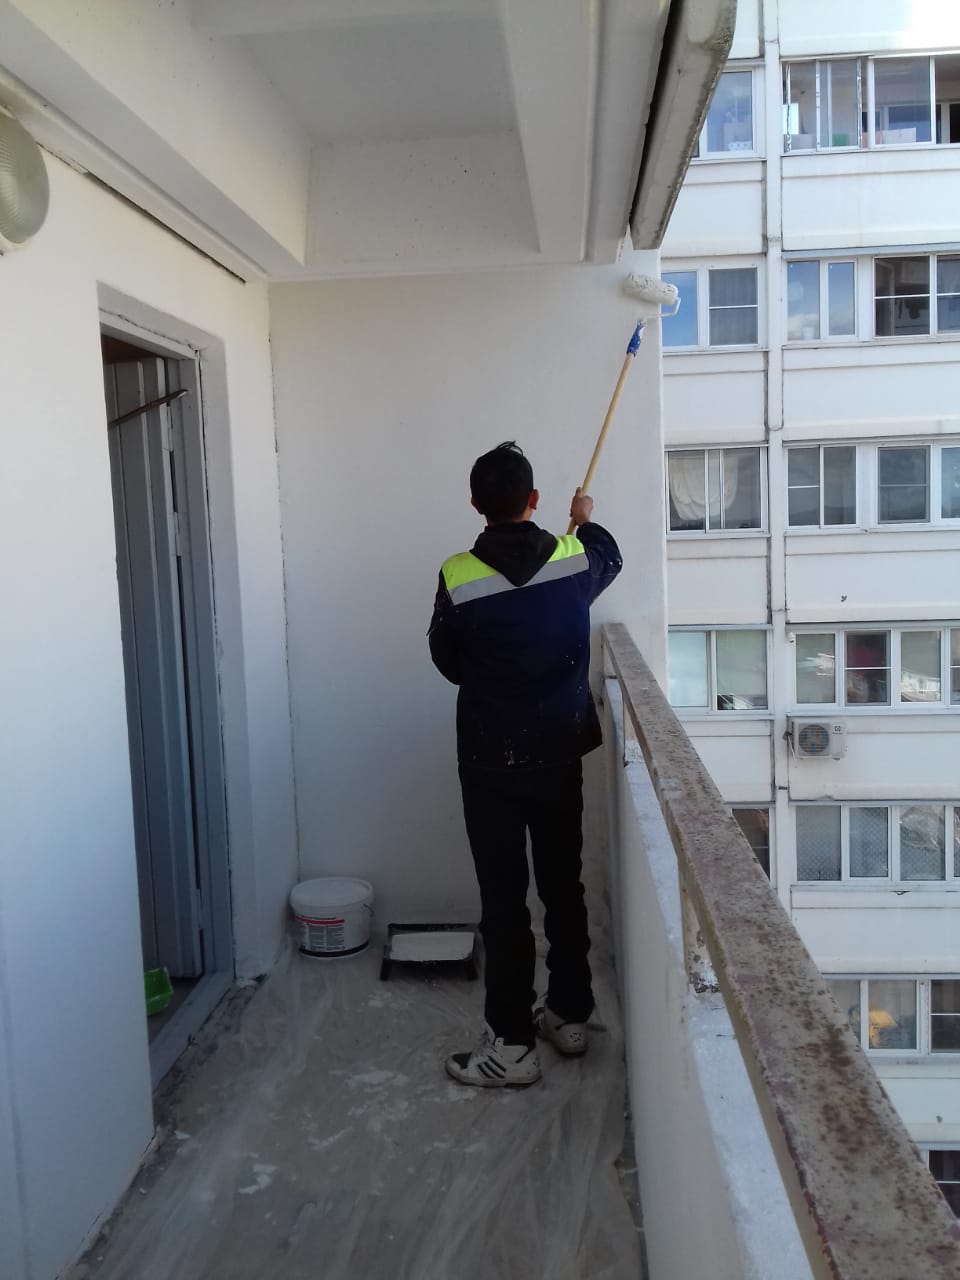 Уважаемые жители, ведутся работы по покраске переходных балконов в многоквартирном доме, расположенном по адресу: п. Развилка, д.48, подъезд №2.